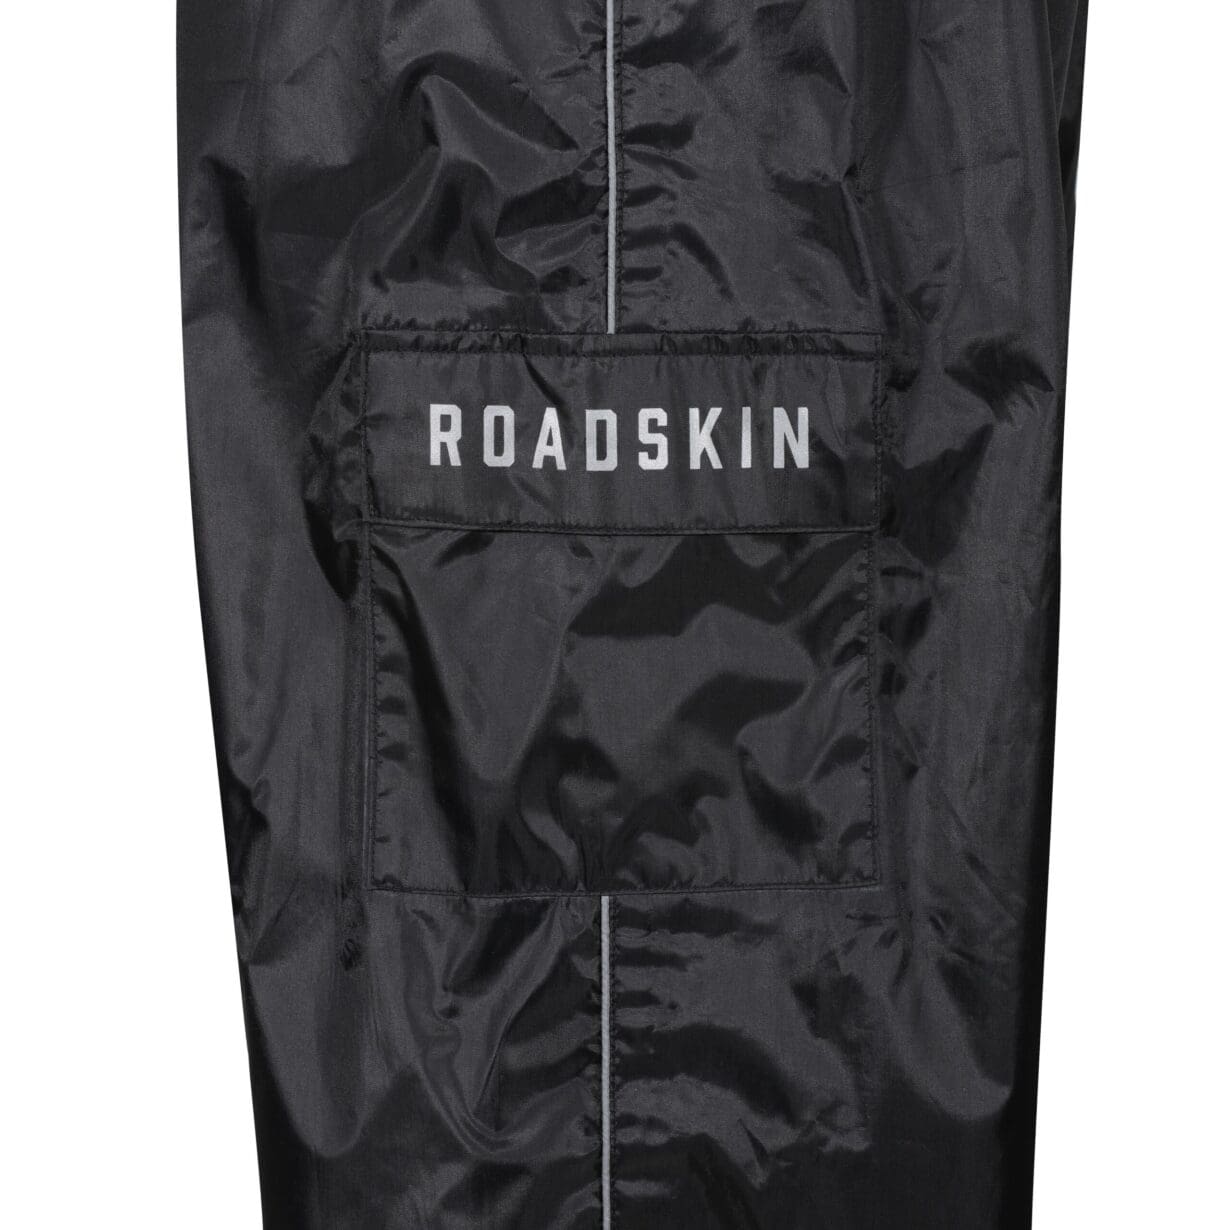 Rainskin waterproof trousers from Roadskin